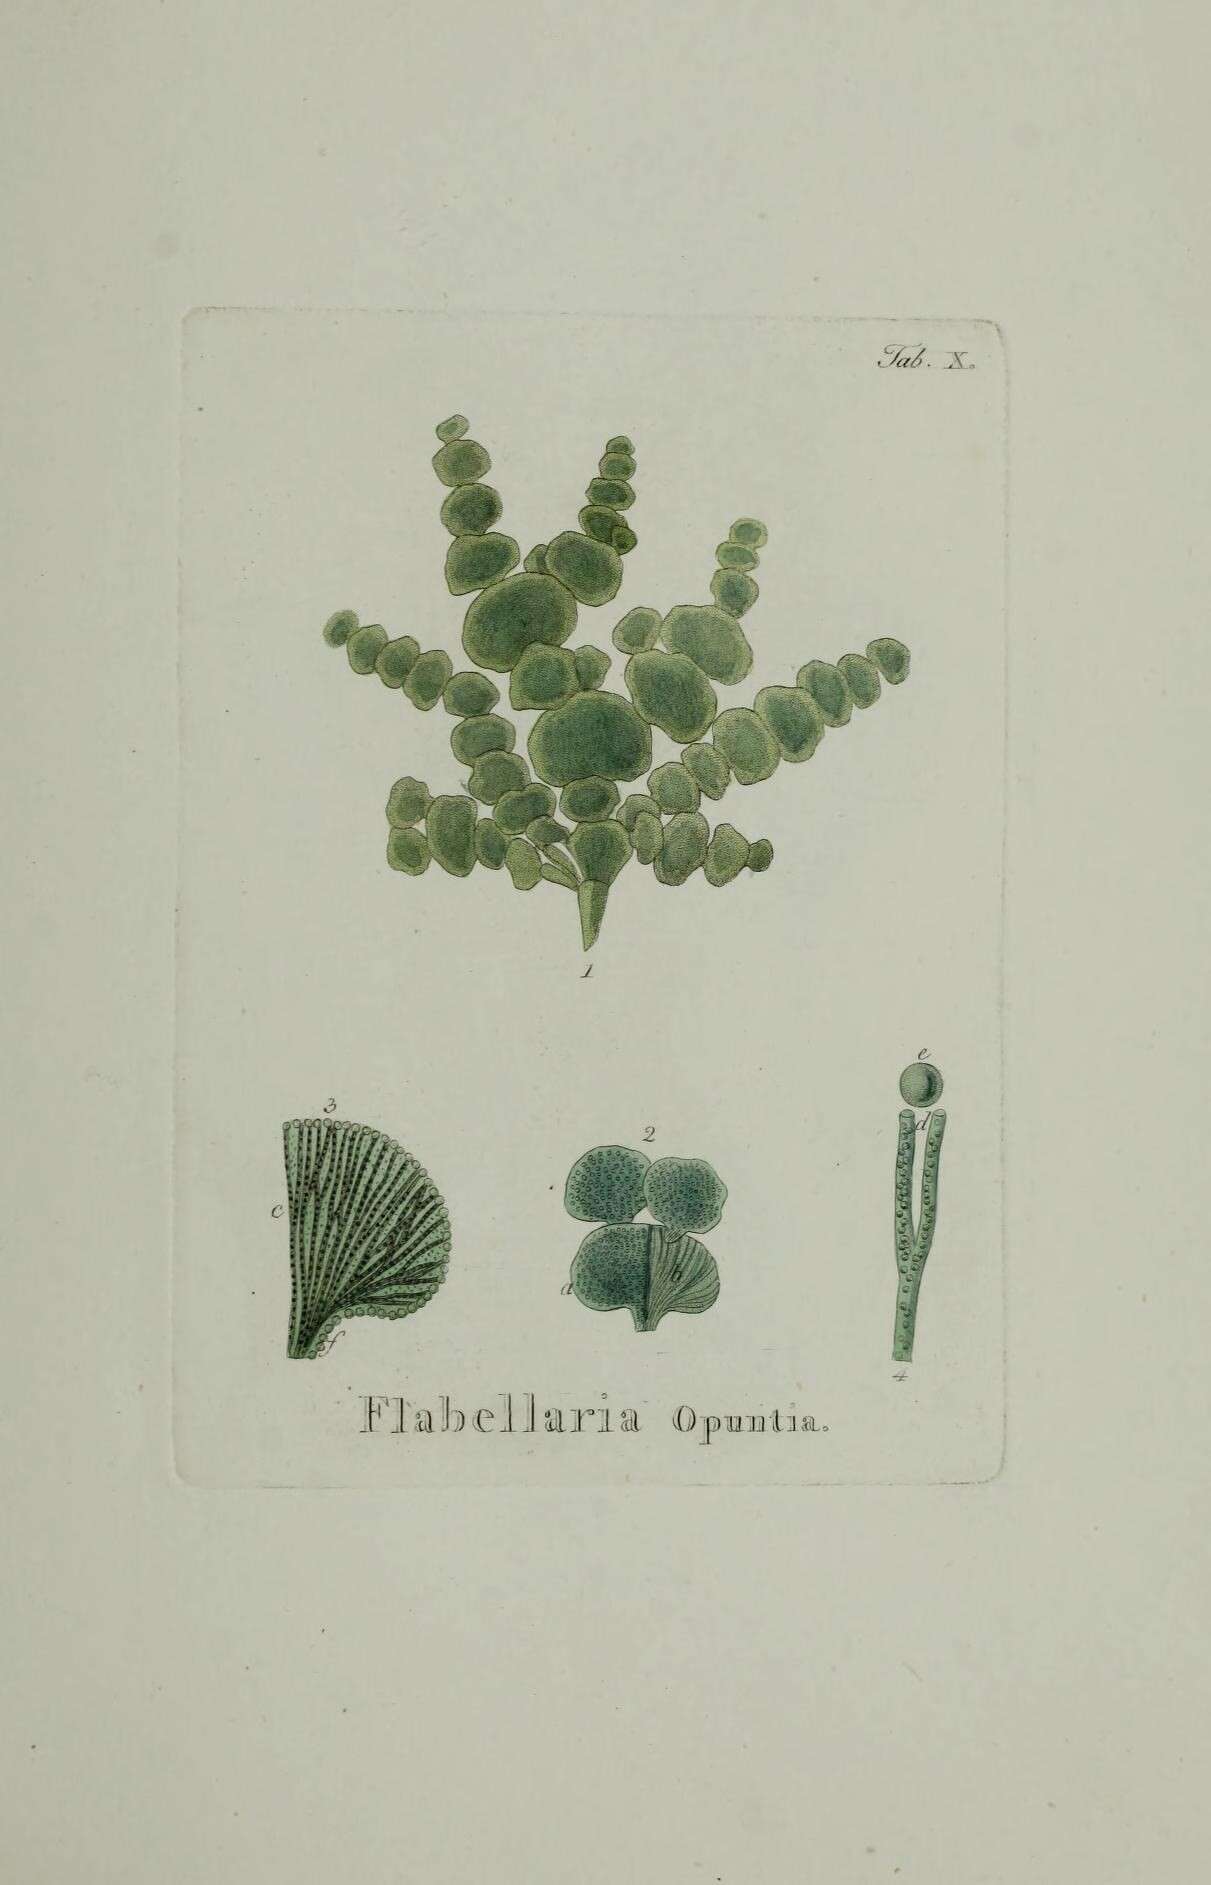 Image of Halimeda opuntia